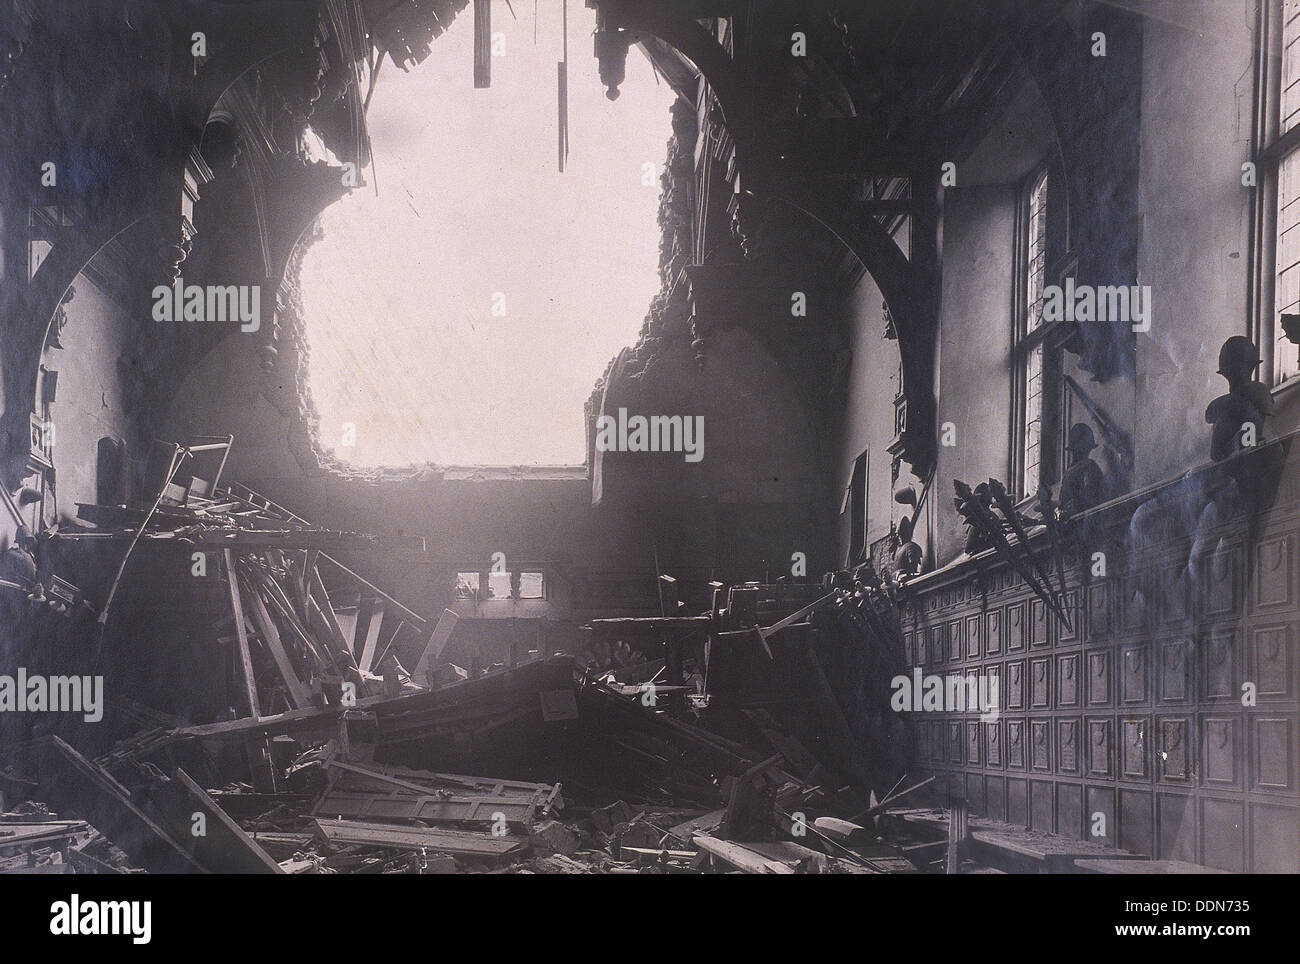 Vue de l'intérieur de Middle Temple Hall, City de Londres, après un raid aérien, c1941. Artiste : Anon Banque D'Images